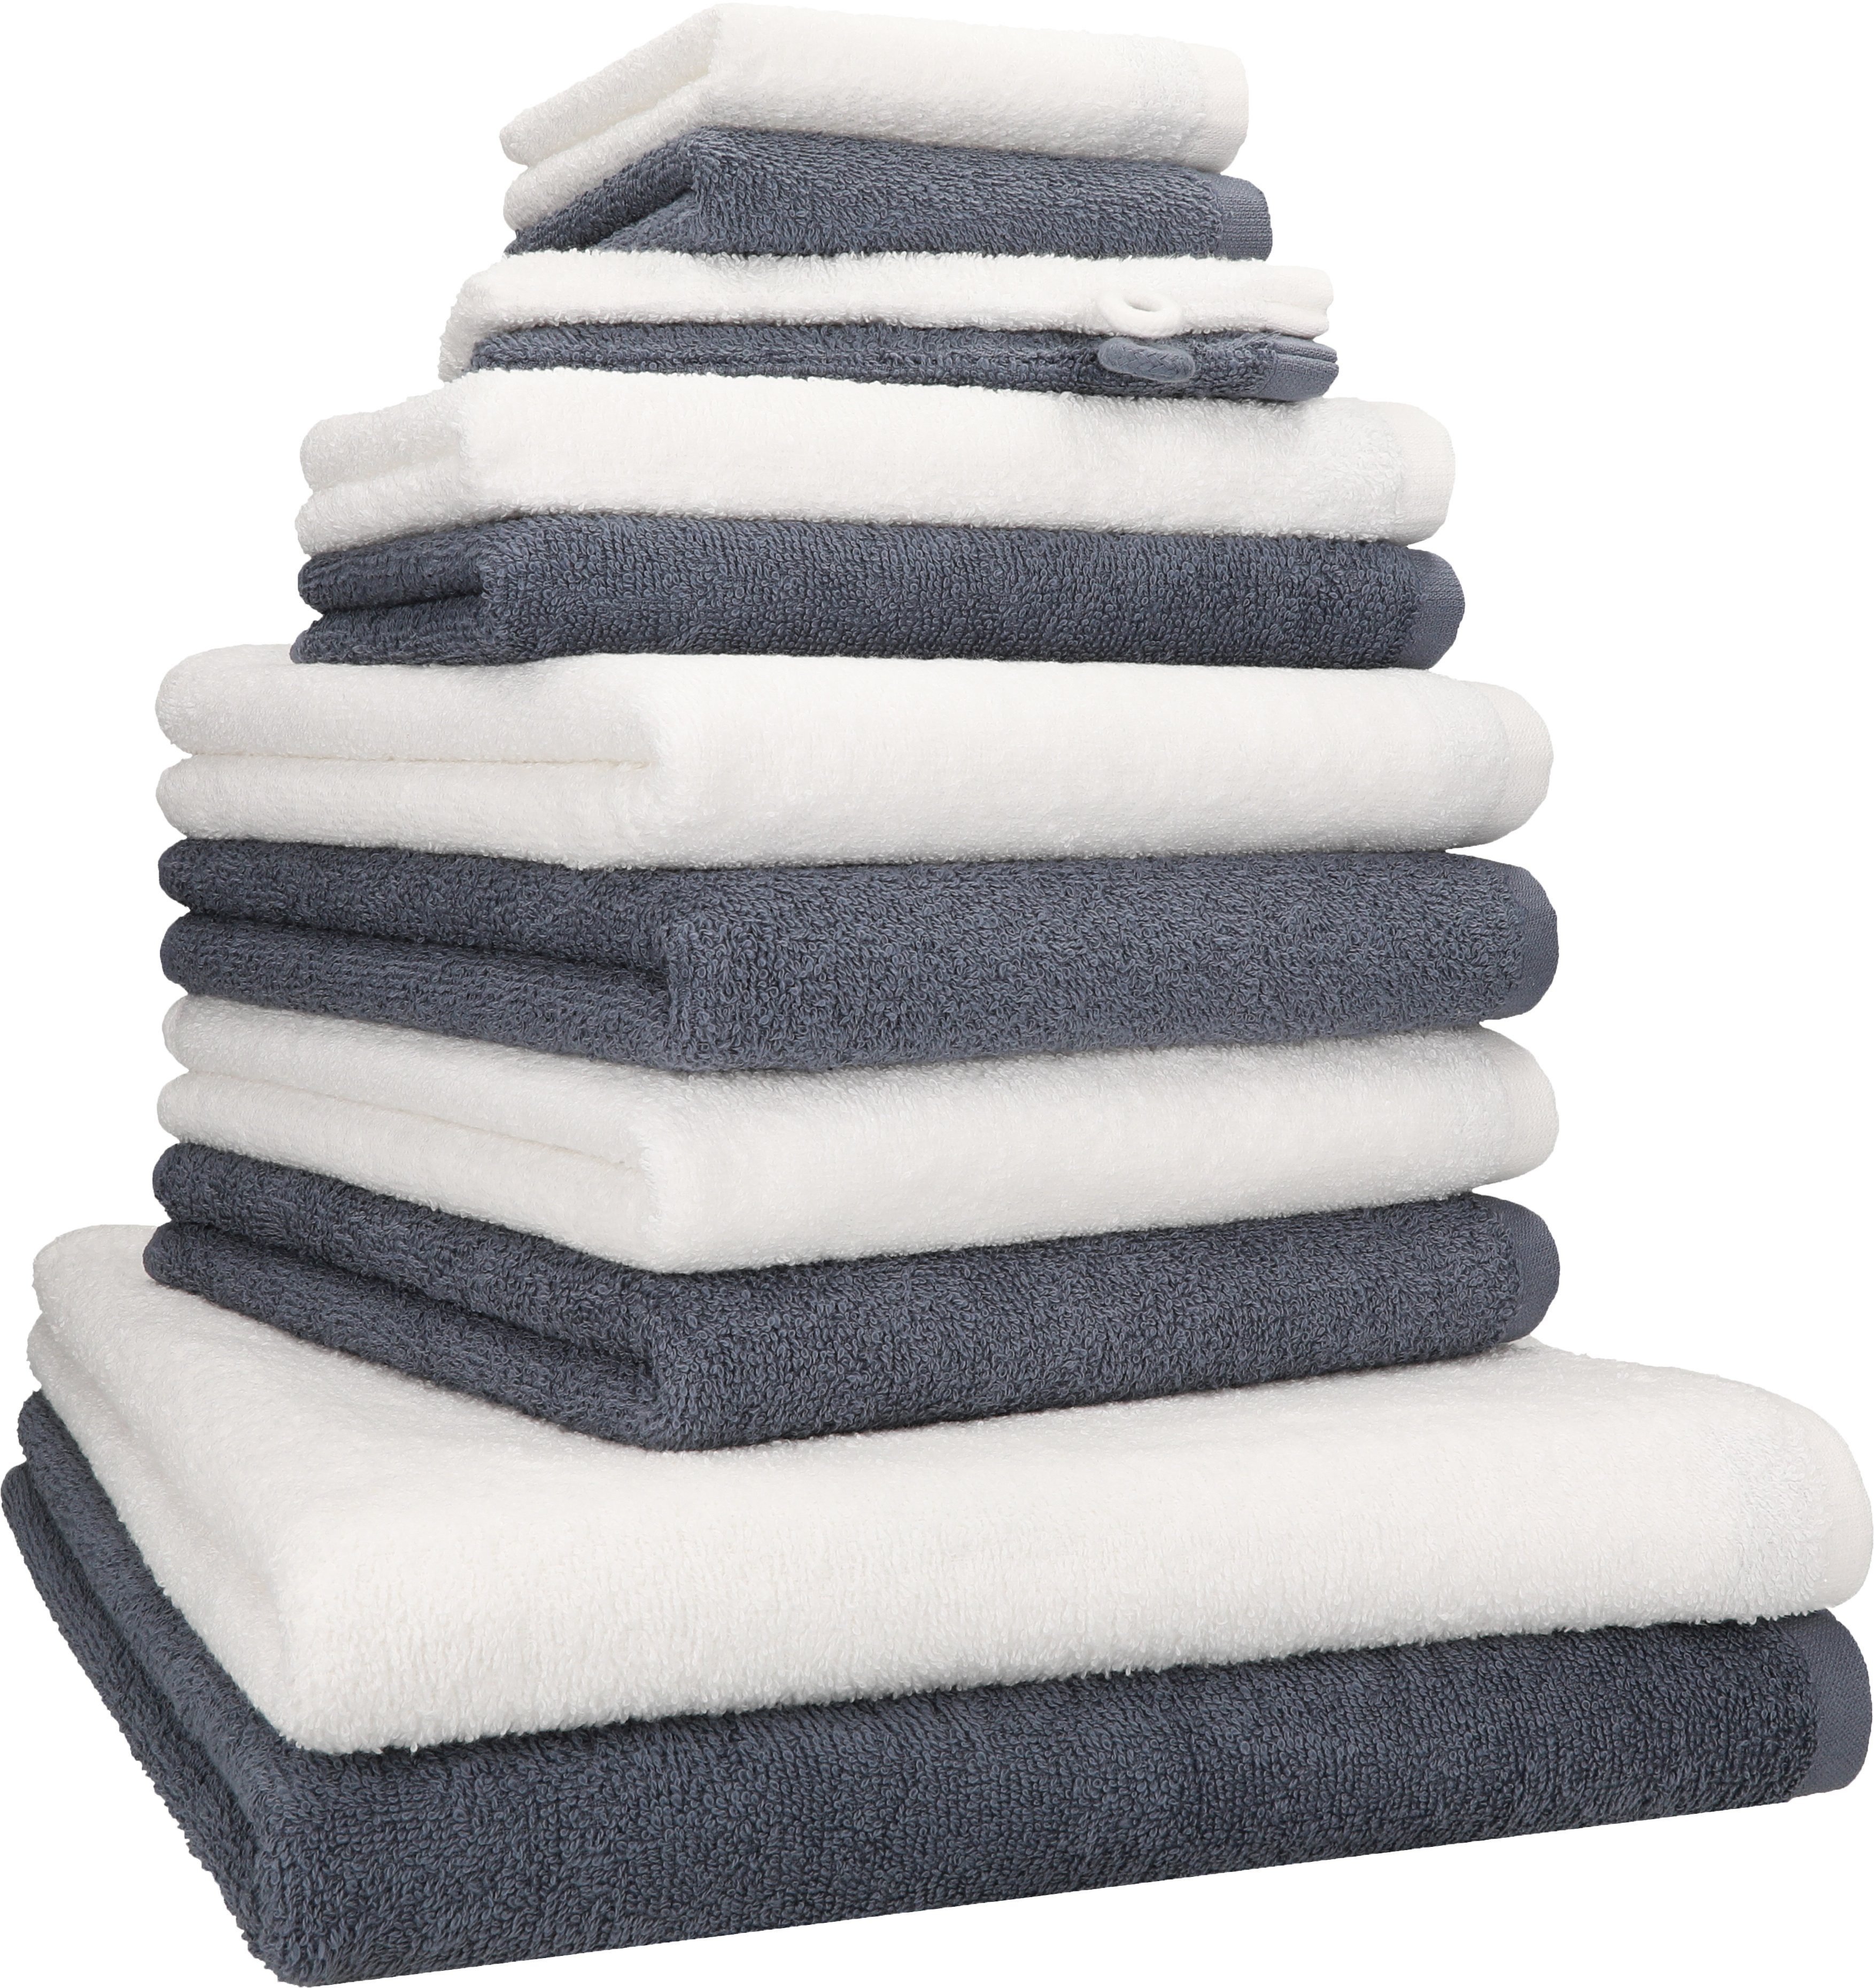 Betz Handtuch Set 12 TLG. Handtuch Set BERLIN Farbe dunkelgrau - weiß, 100%  Baumwolle